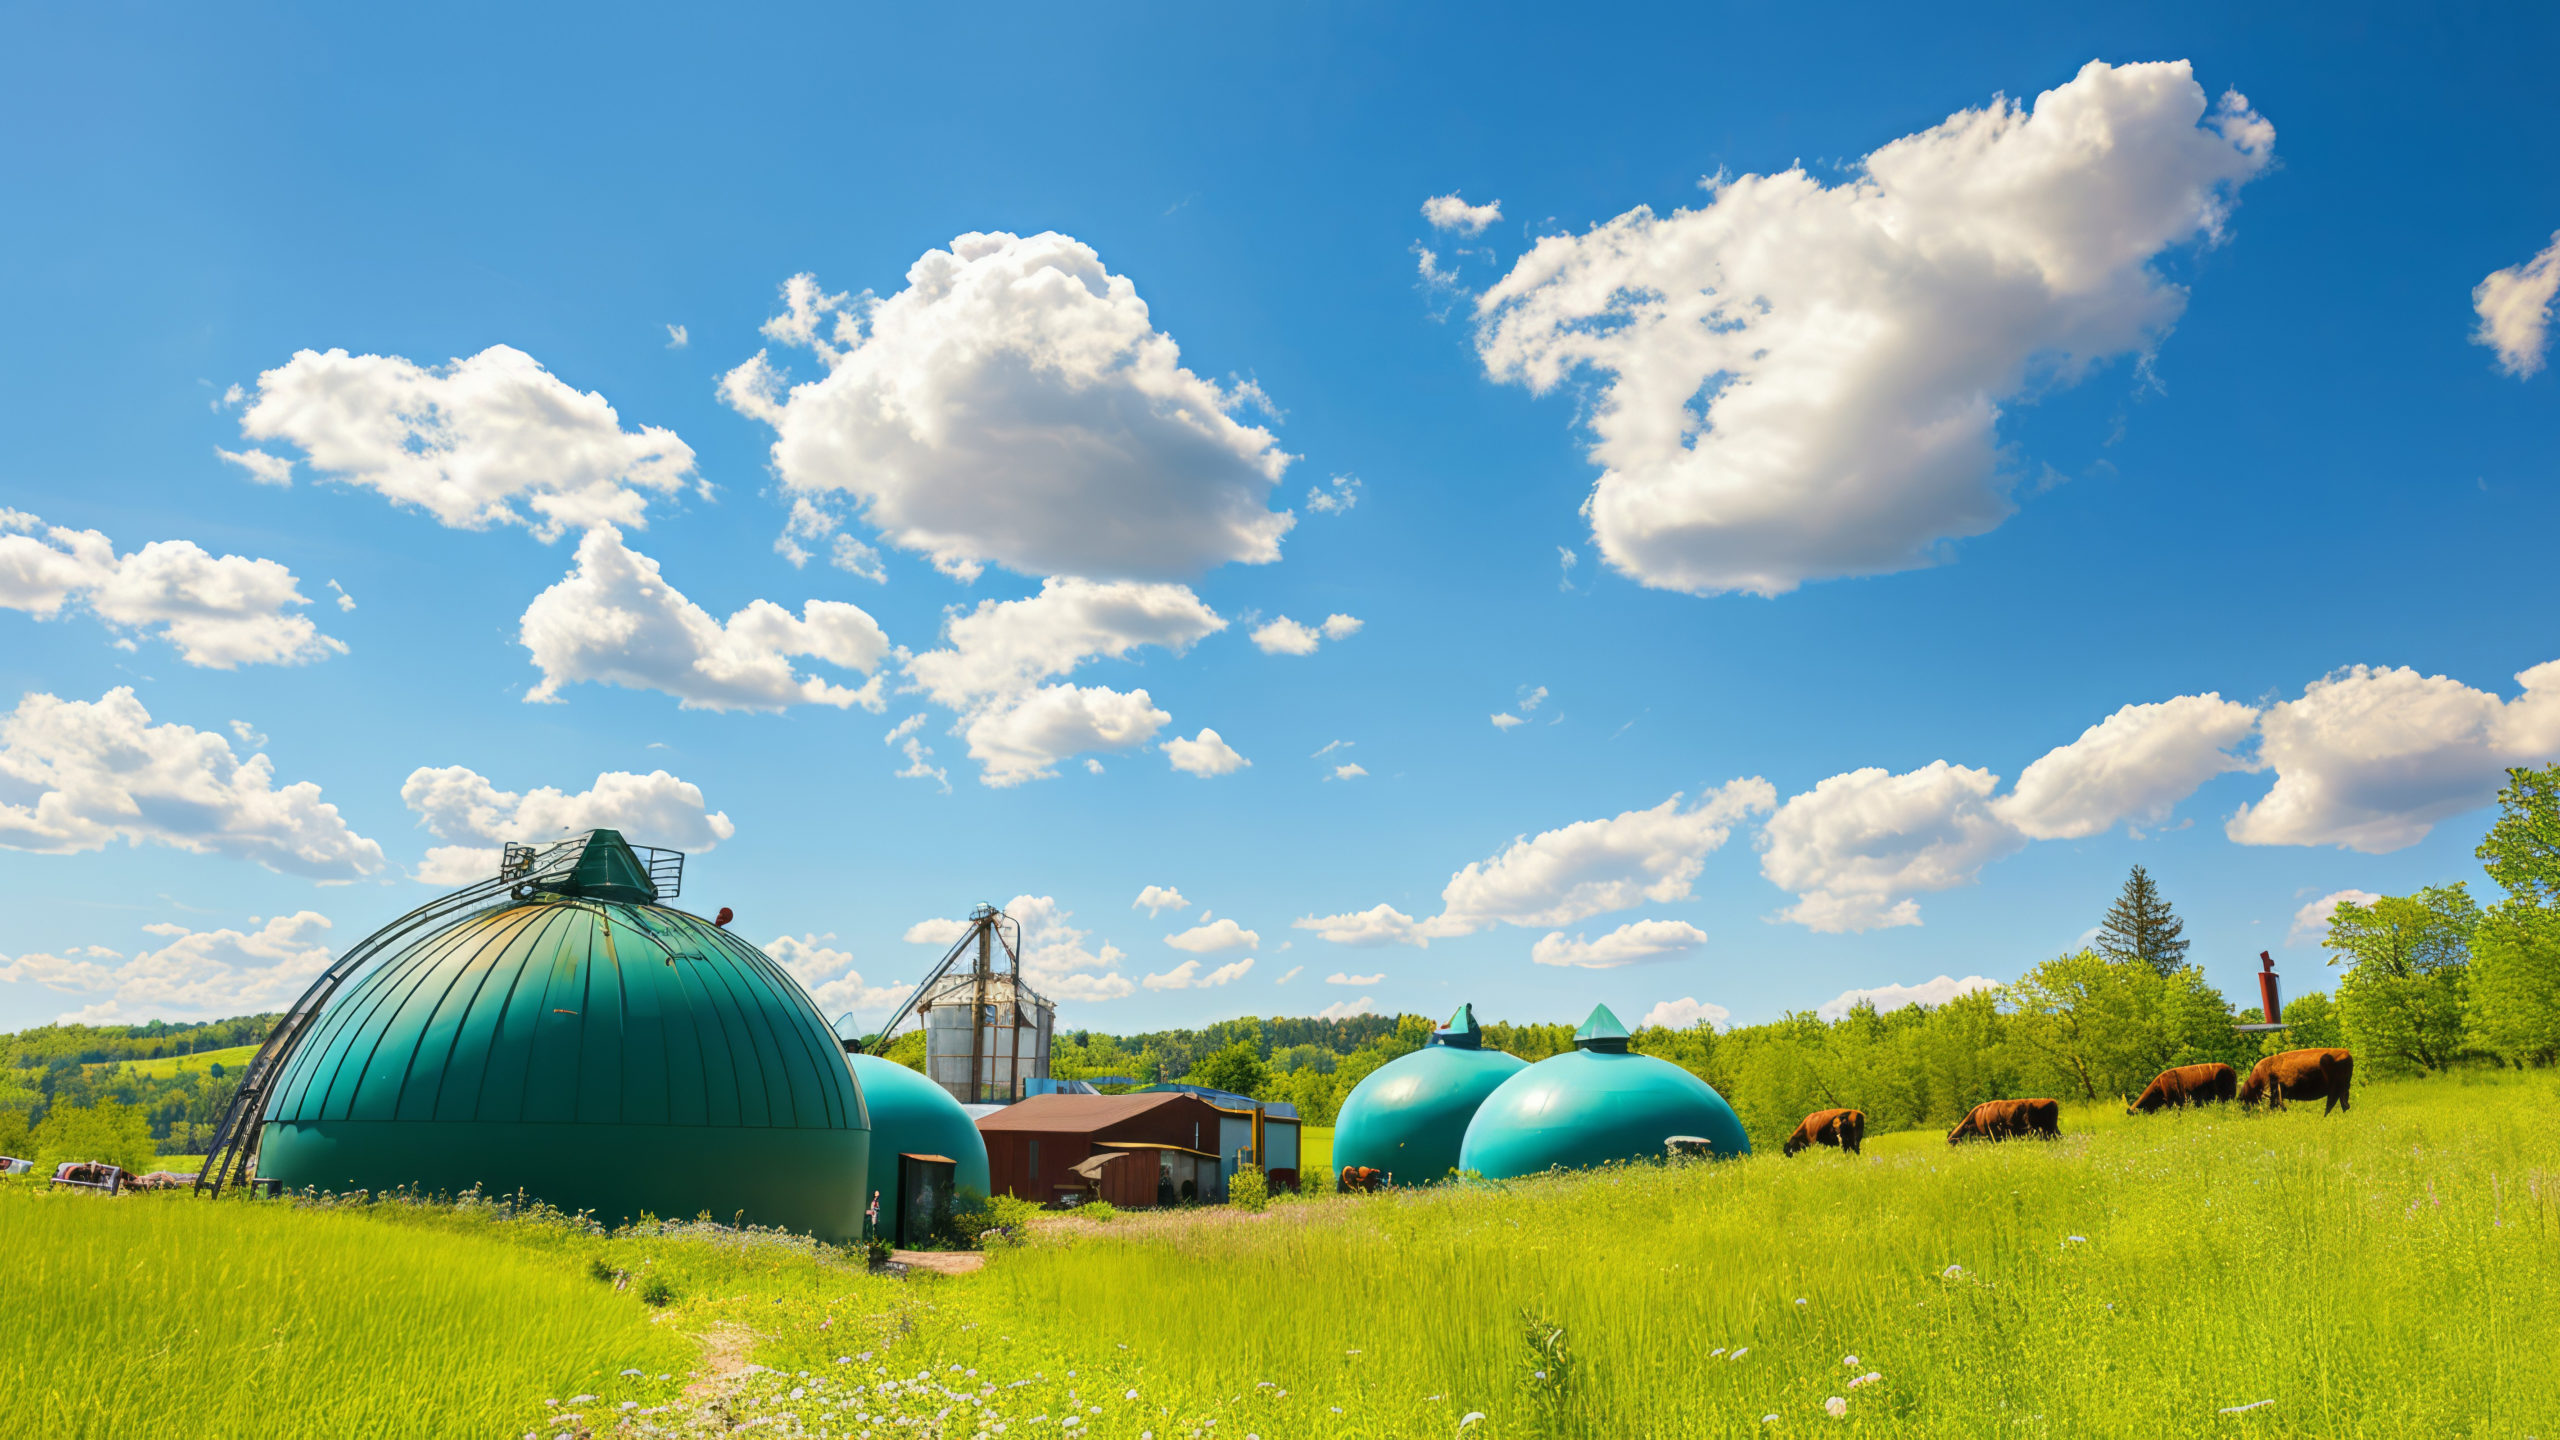 reservoirs-biogaz-energie-plus-verte-au-milieu-vie-agricole